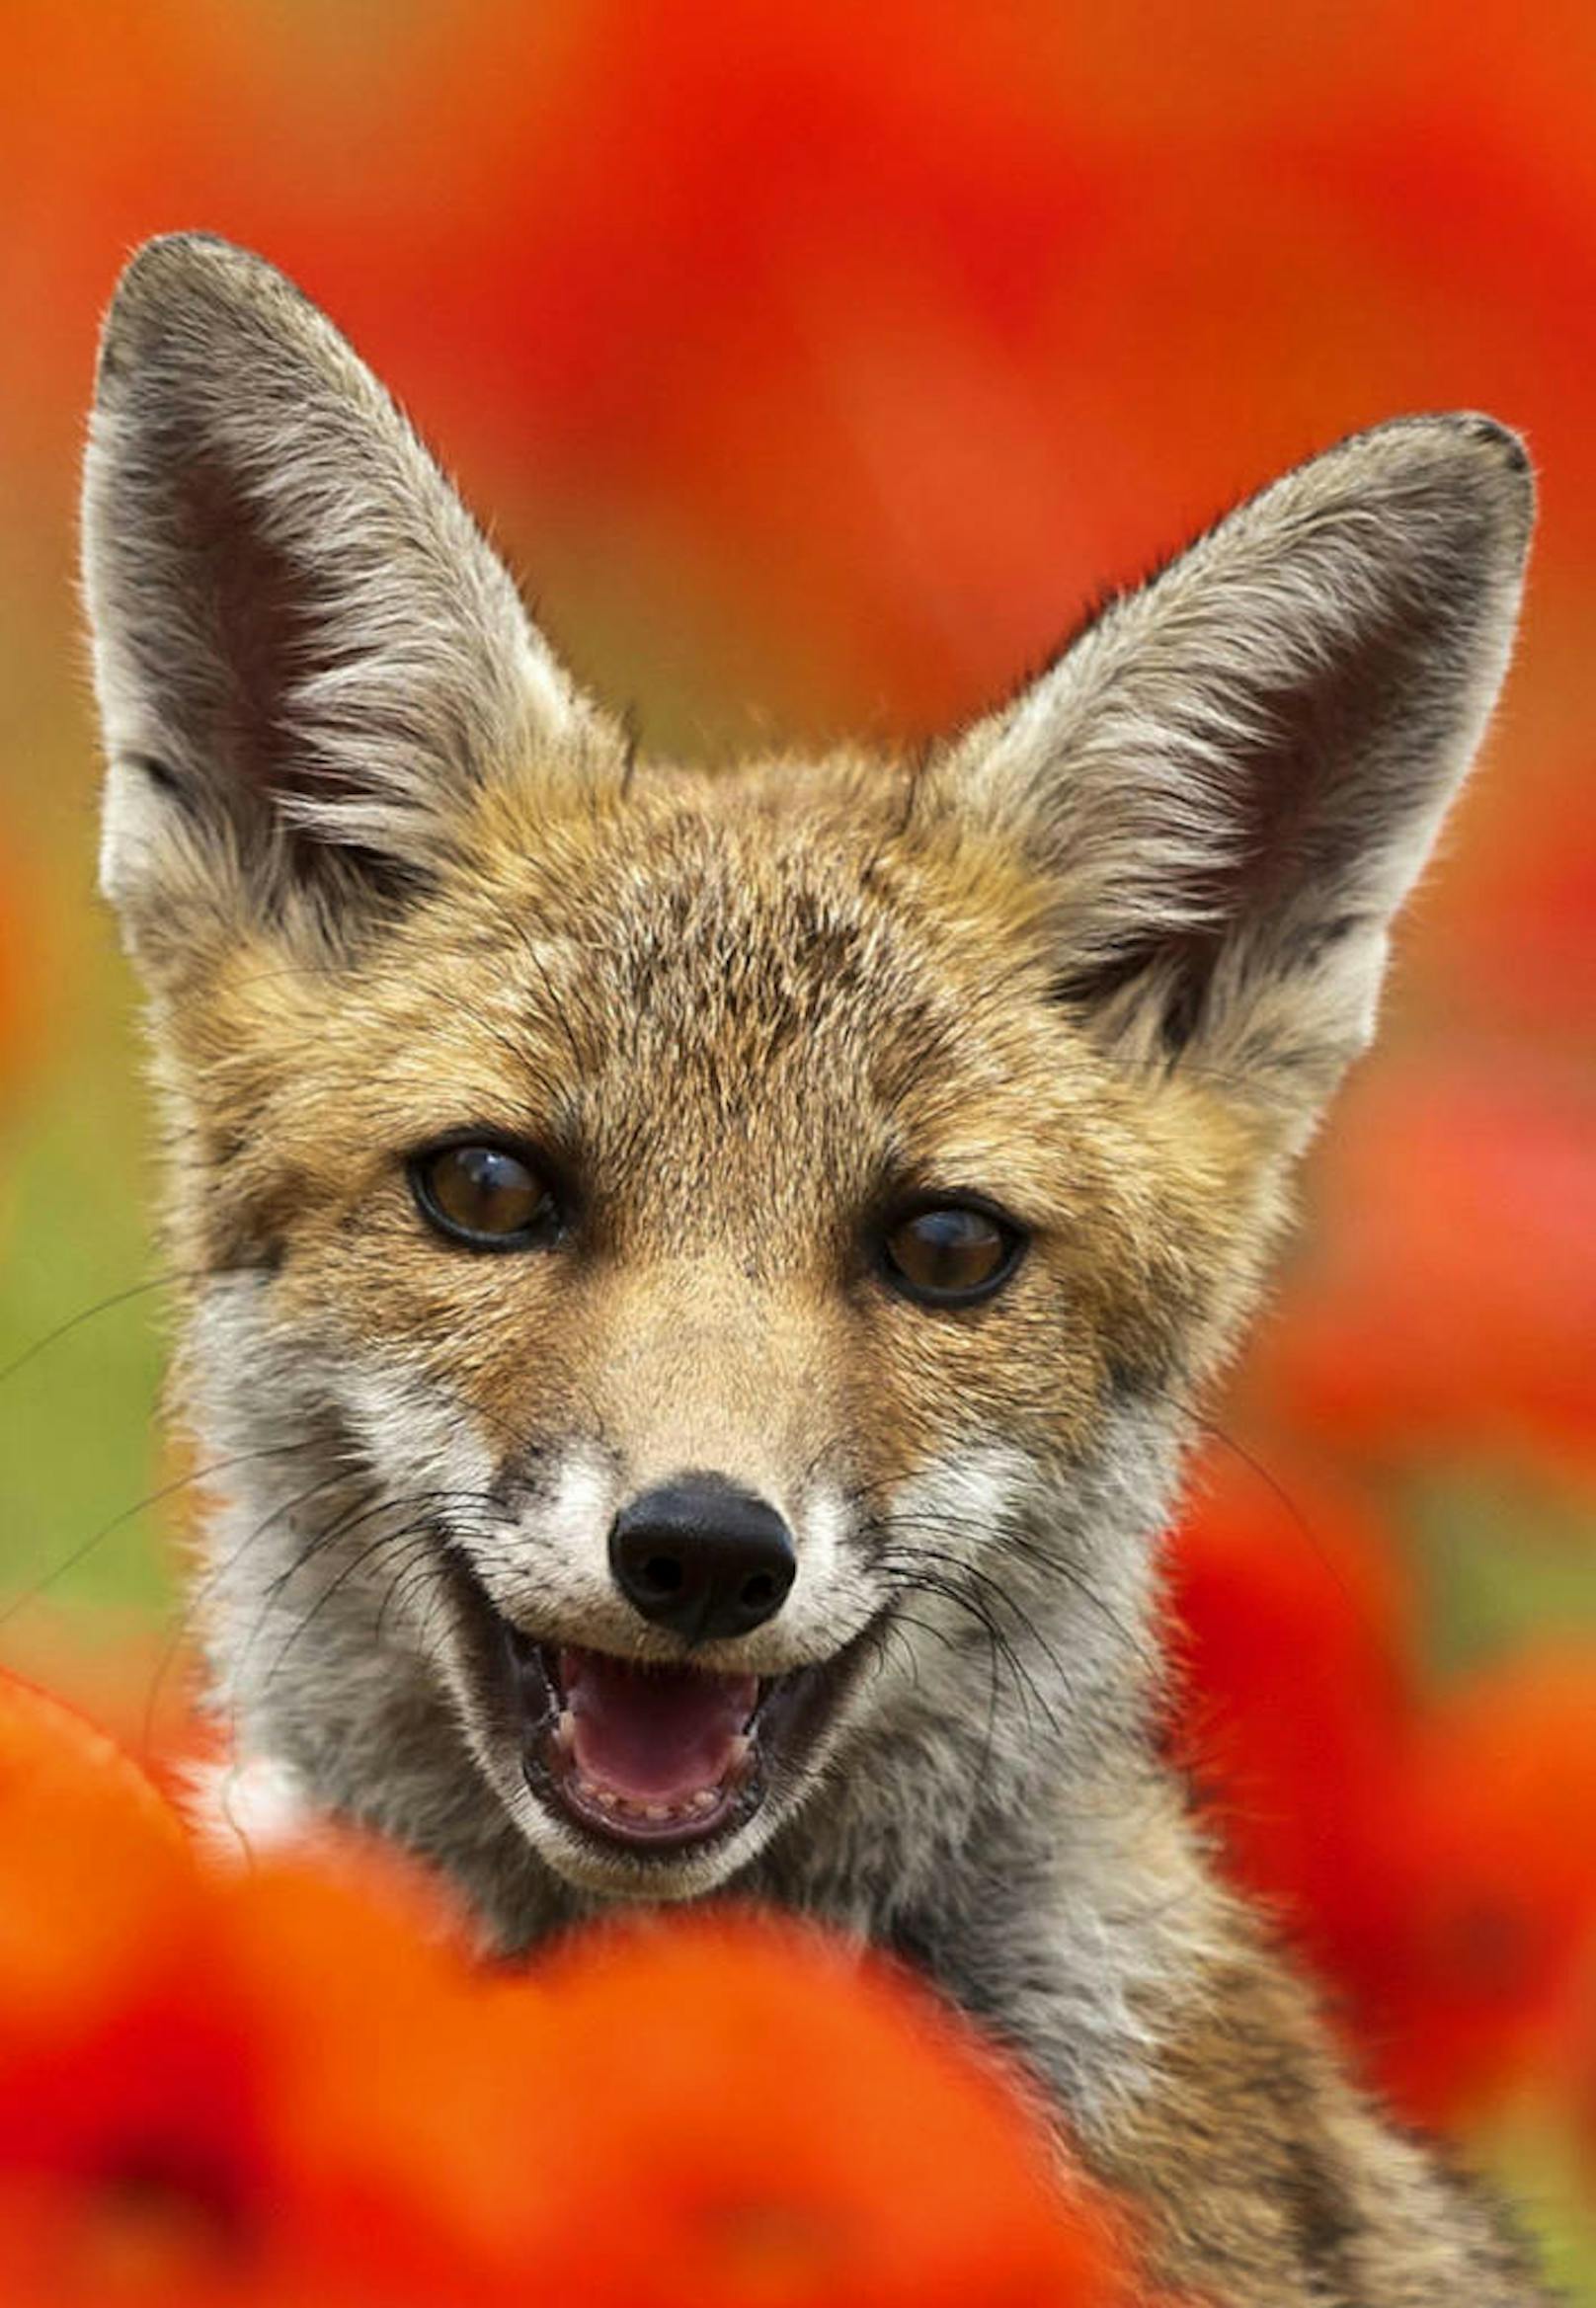 <b>Glücklicher Fuchs!</b> Dieser gerettete Fuchs (UK) zeigt dem Fotografen sein schönstes Lächeln.